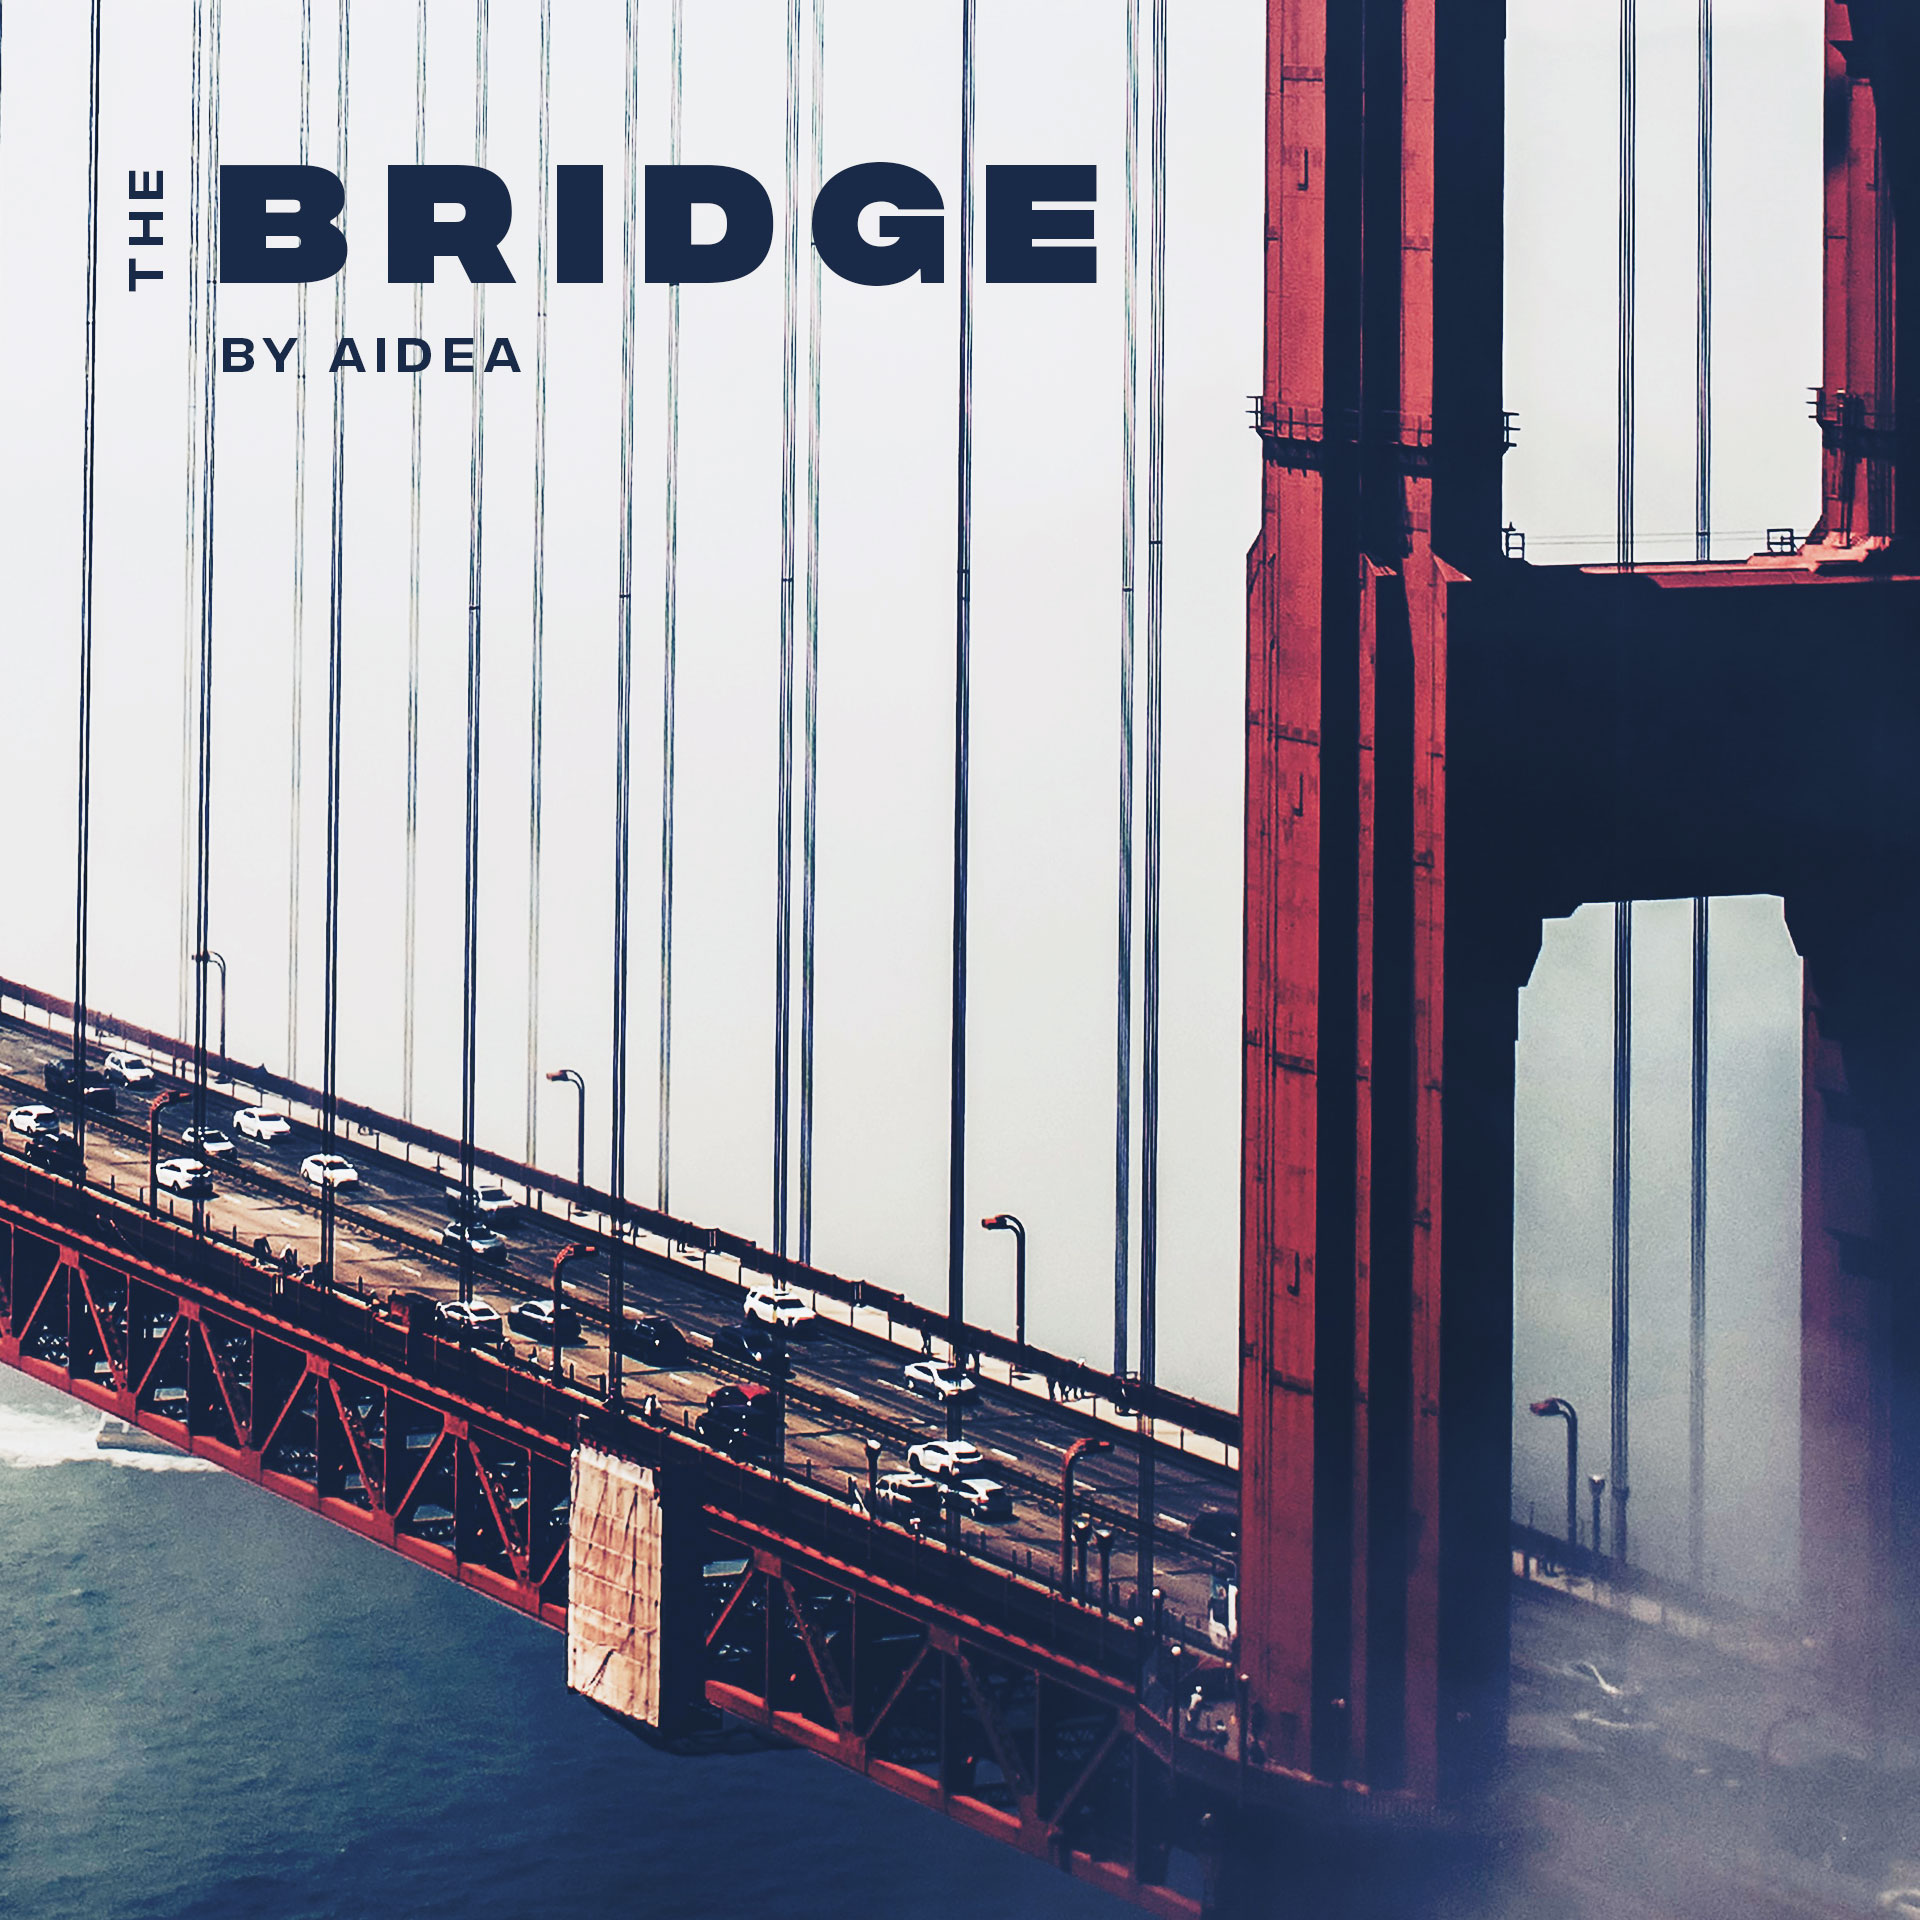 aidea album the bridge